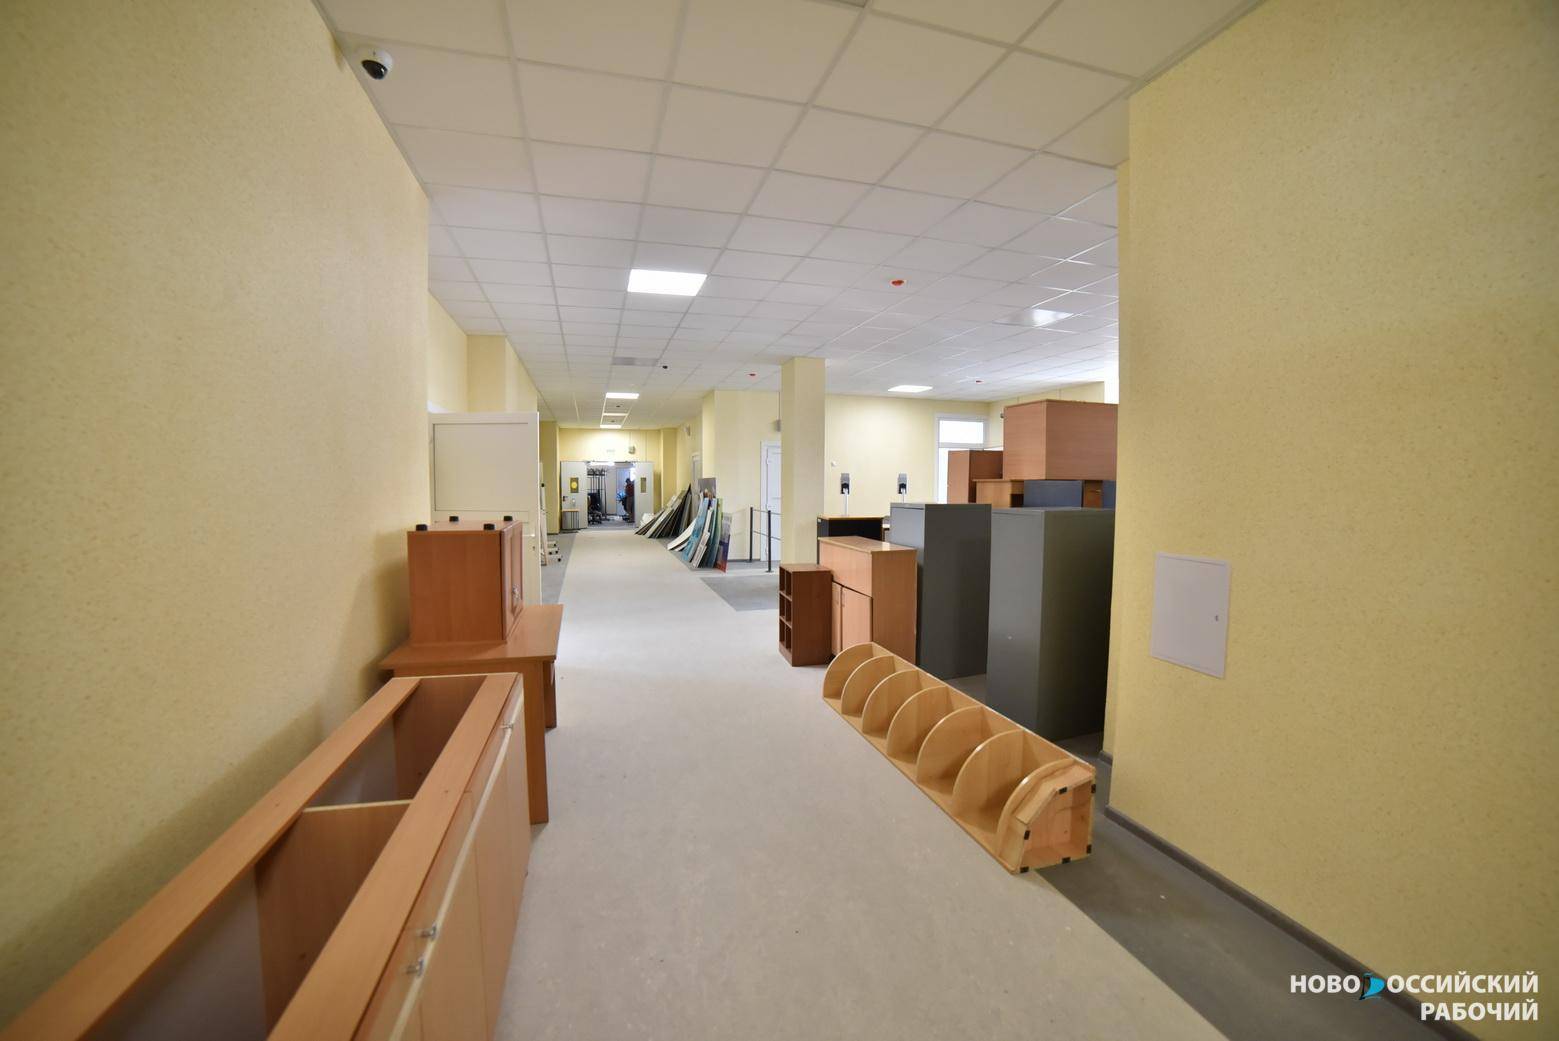 В Новороссийске  за год появились две школы и спорткомплекс. На очереди зал единоборств и поликлиника